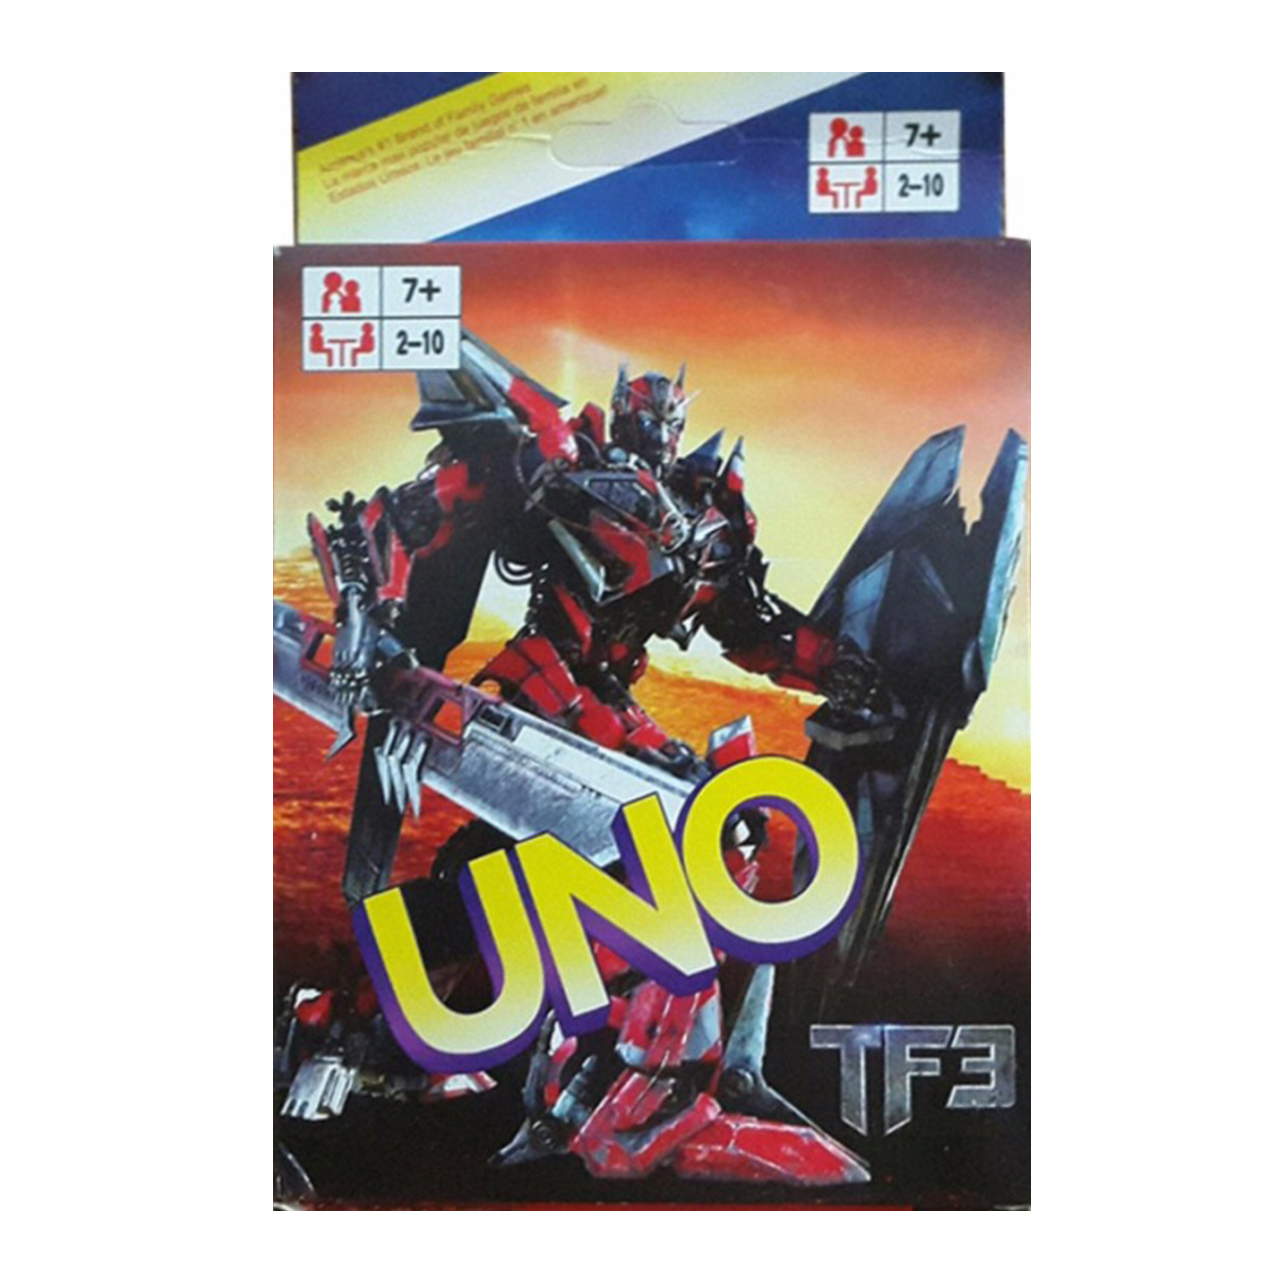 بازی فکری UNO TF3 مدل 108 کارتی